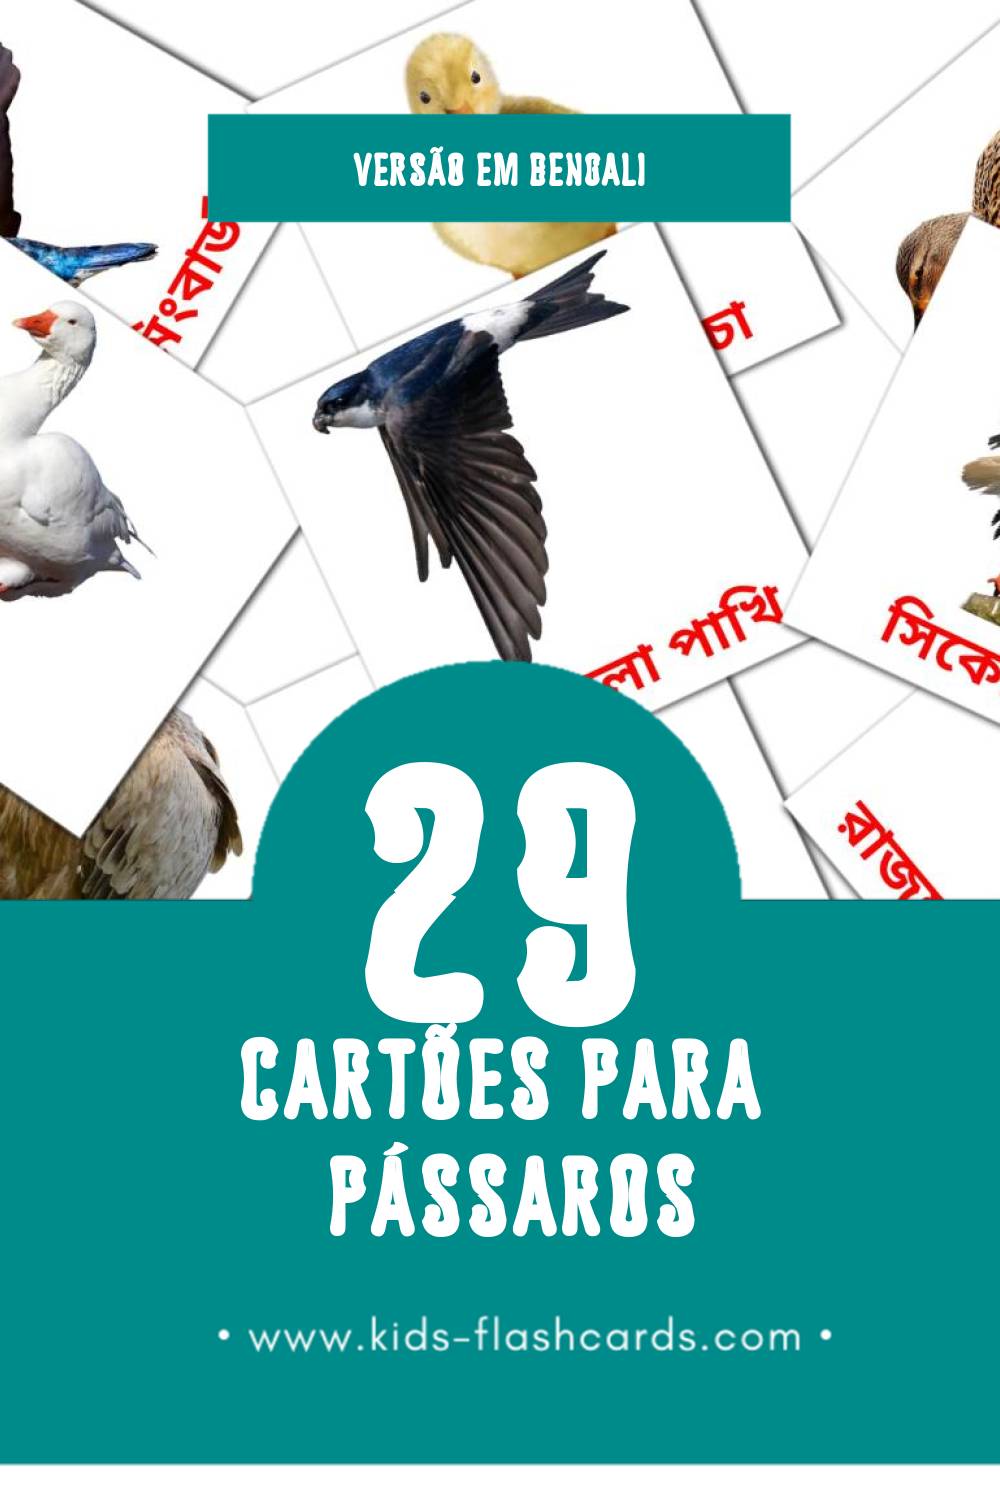 Flashcards de পাখি Visuais para Toddlers (29 cartões em Bengali)